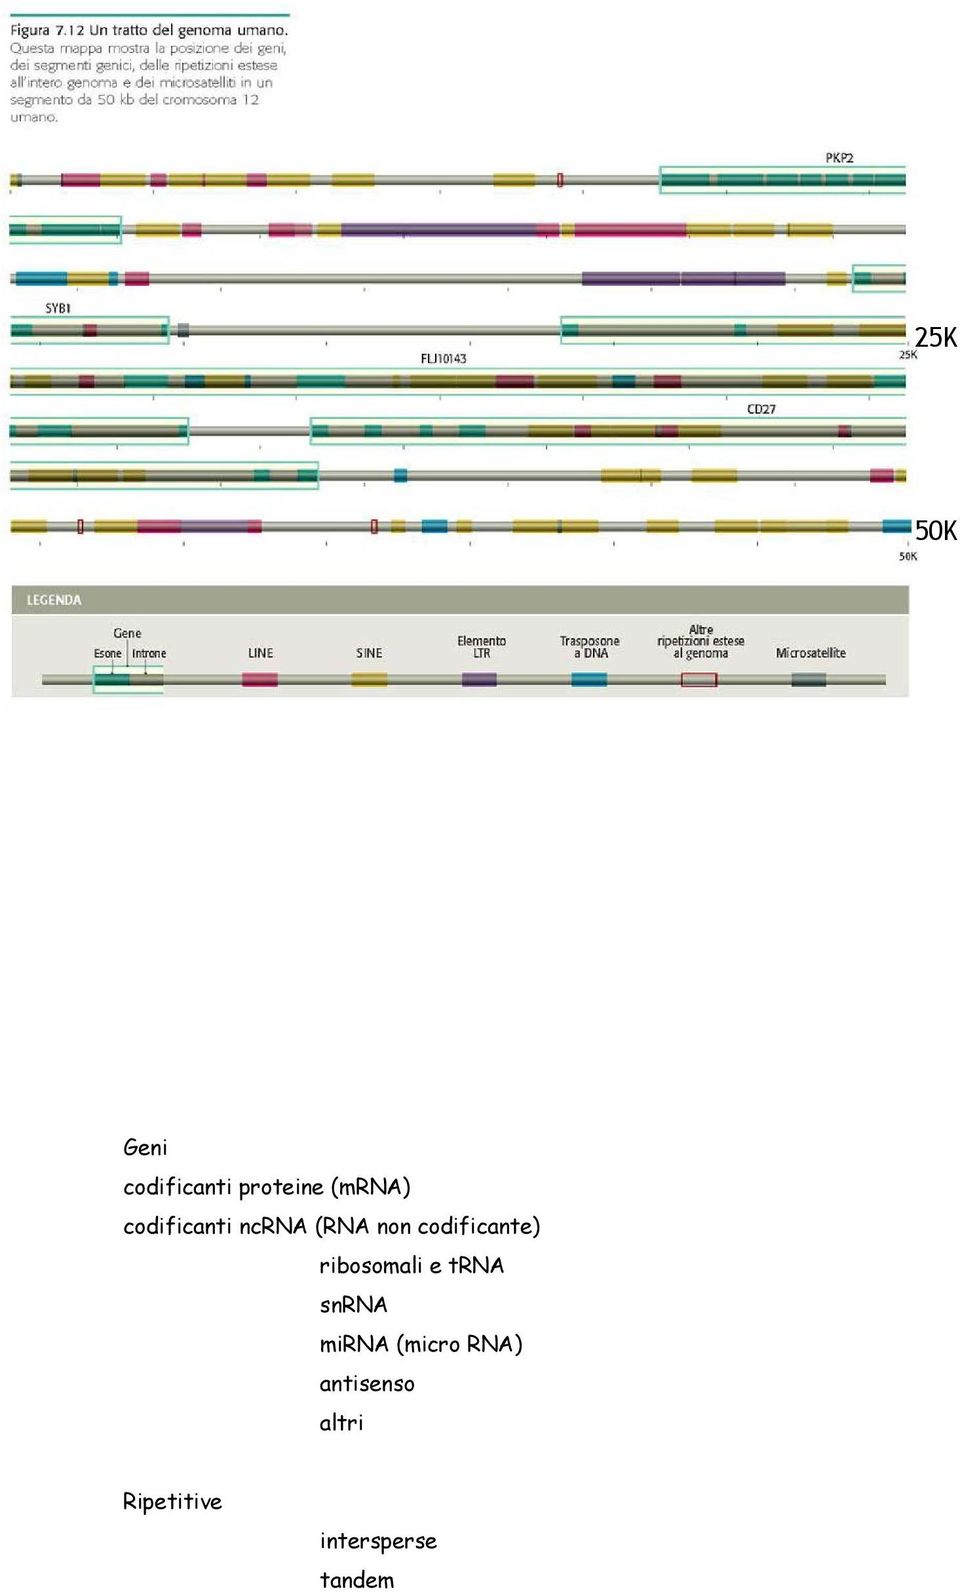 ribosomali e trna snrna mirna (micro RNA)